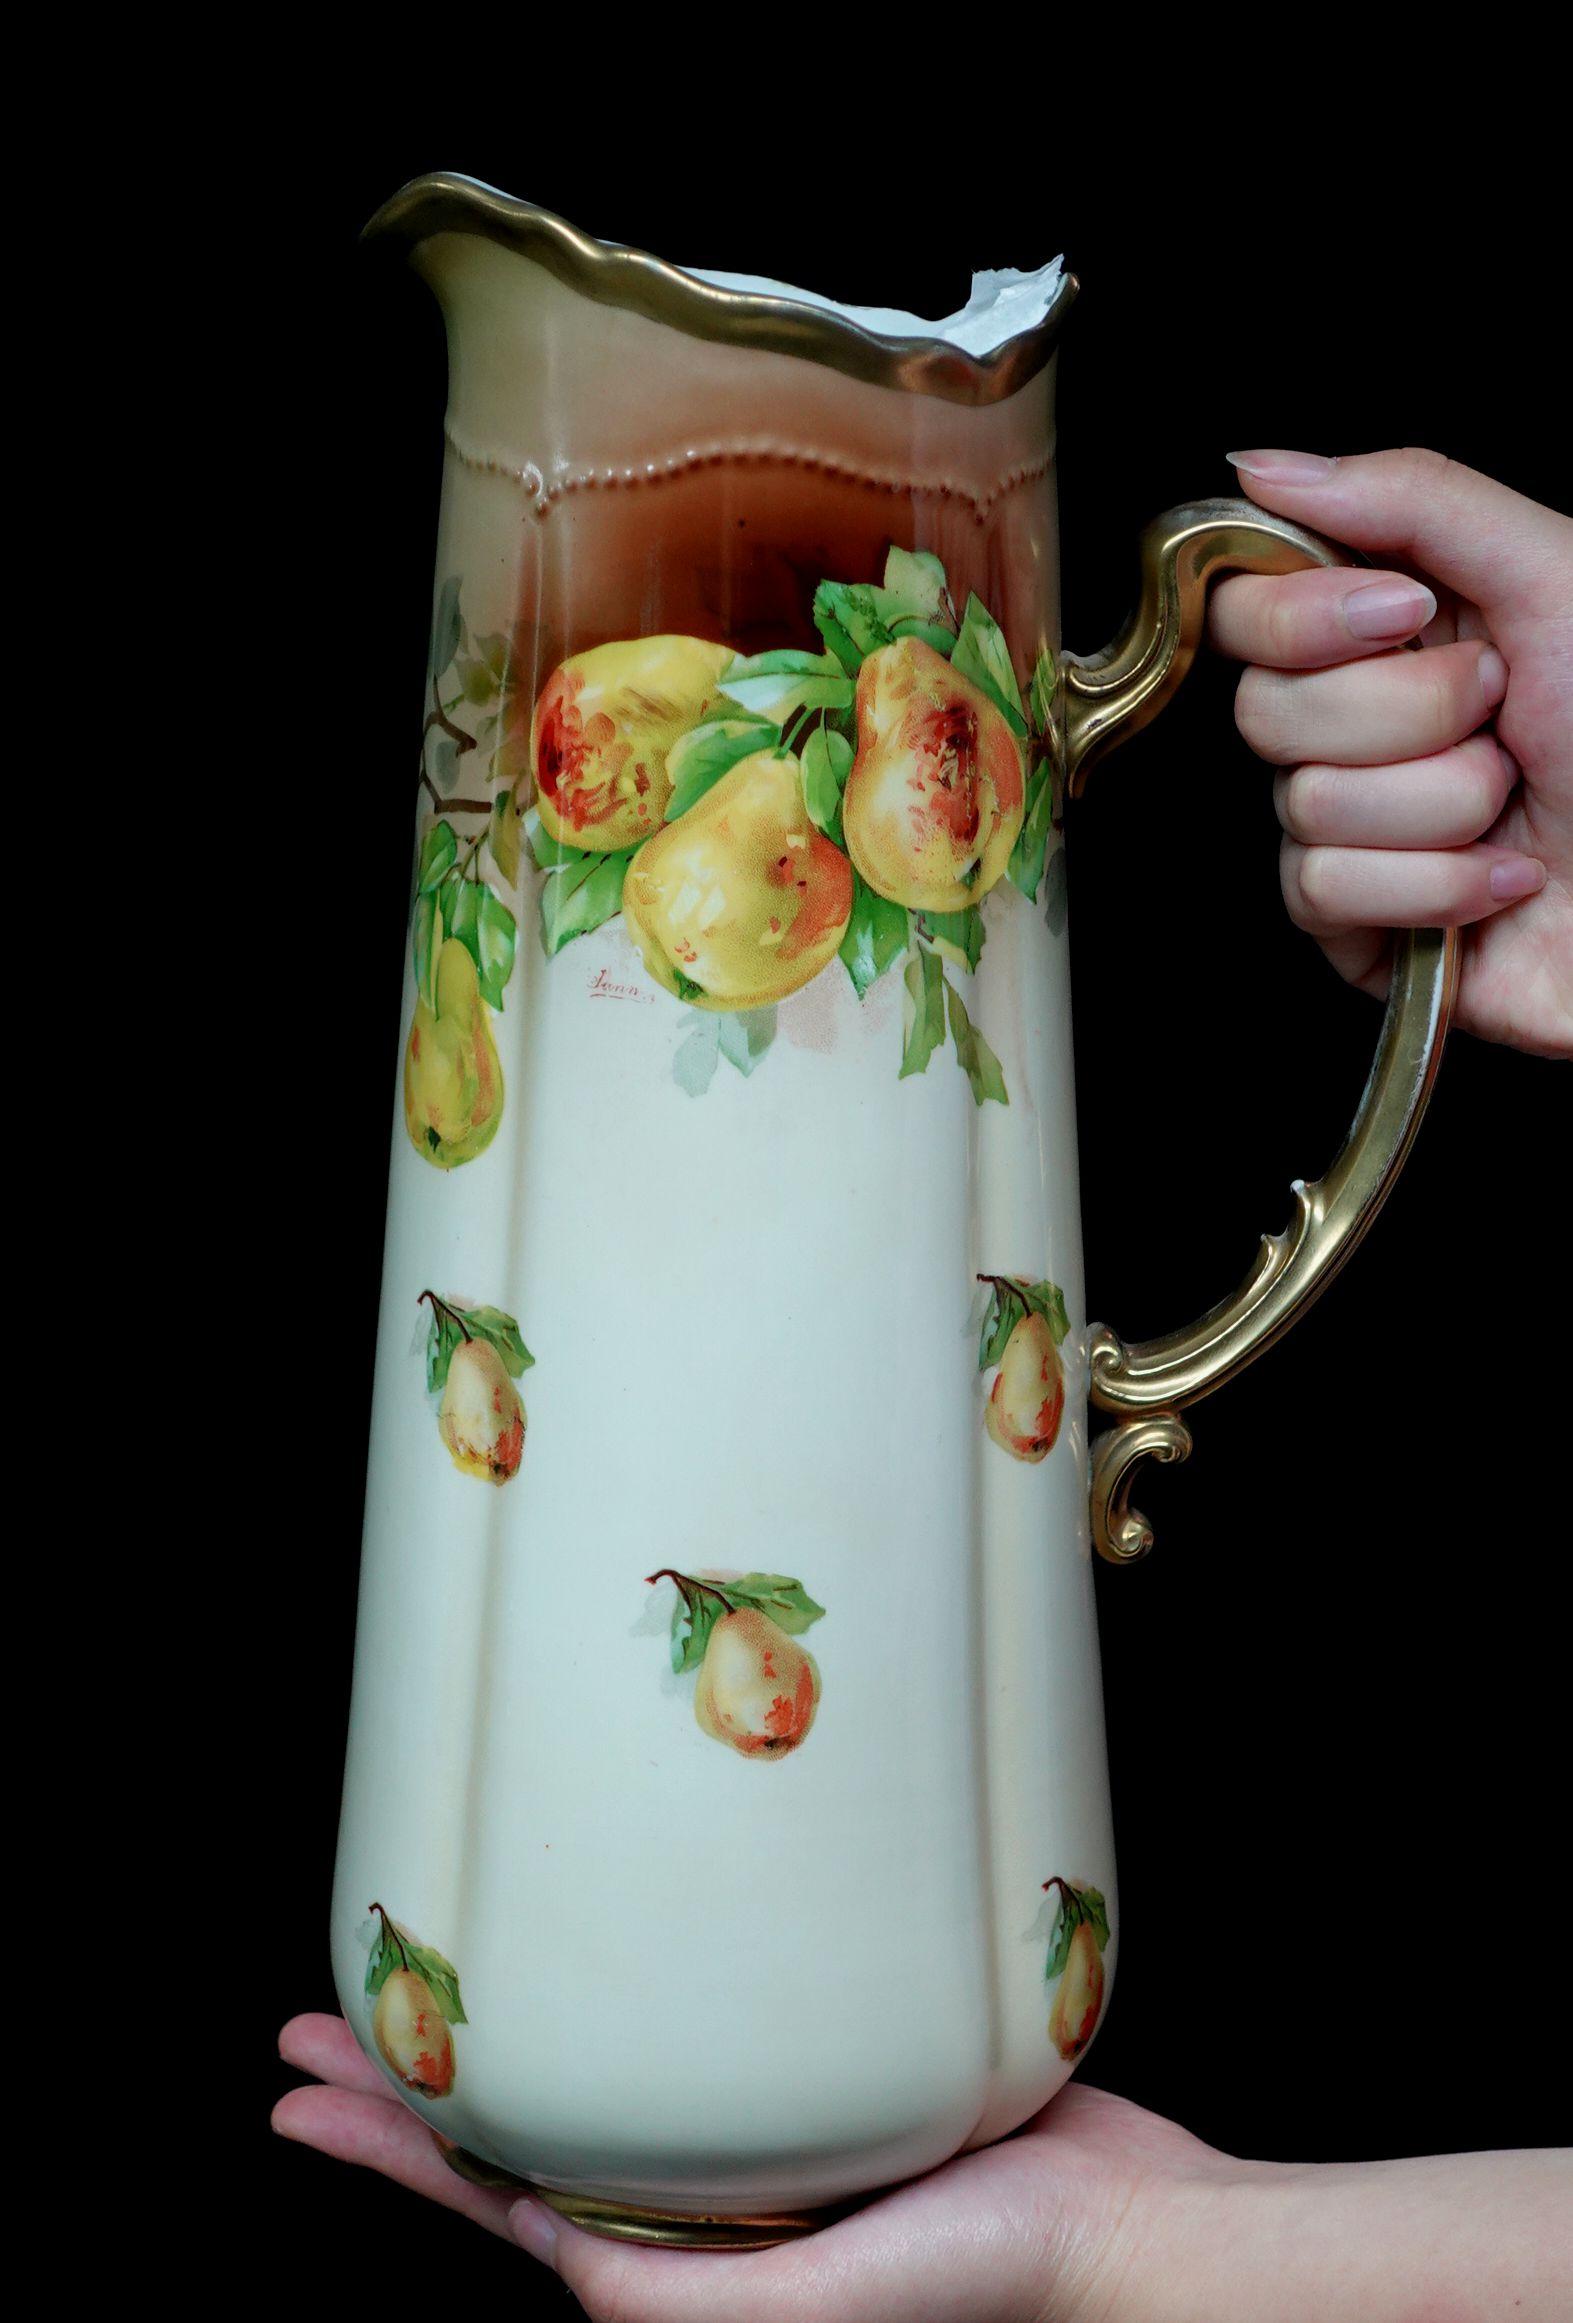 Eine wunderbare antike Royal Austria Large Tankard absolut 100% handbemalte Früchte, Birnen in gelb und orange Präsentation, und reiche grüne Blätter, zarte Anordnung der Zusammensetzung, einige einzelne Birne gemalt zufällig auf dem Krug in der